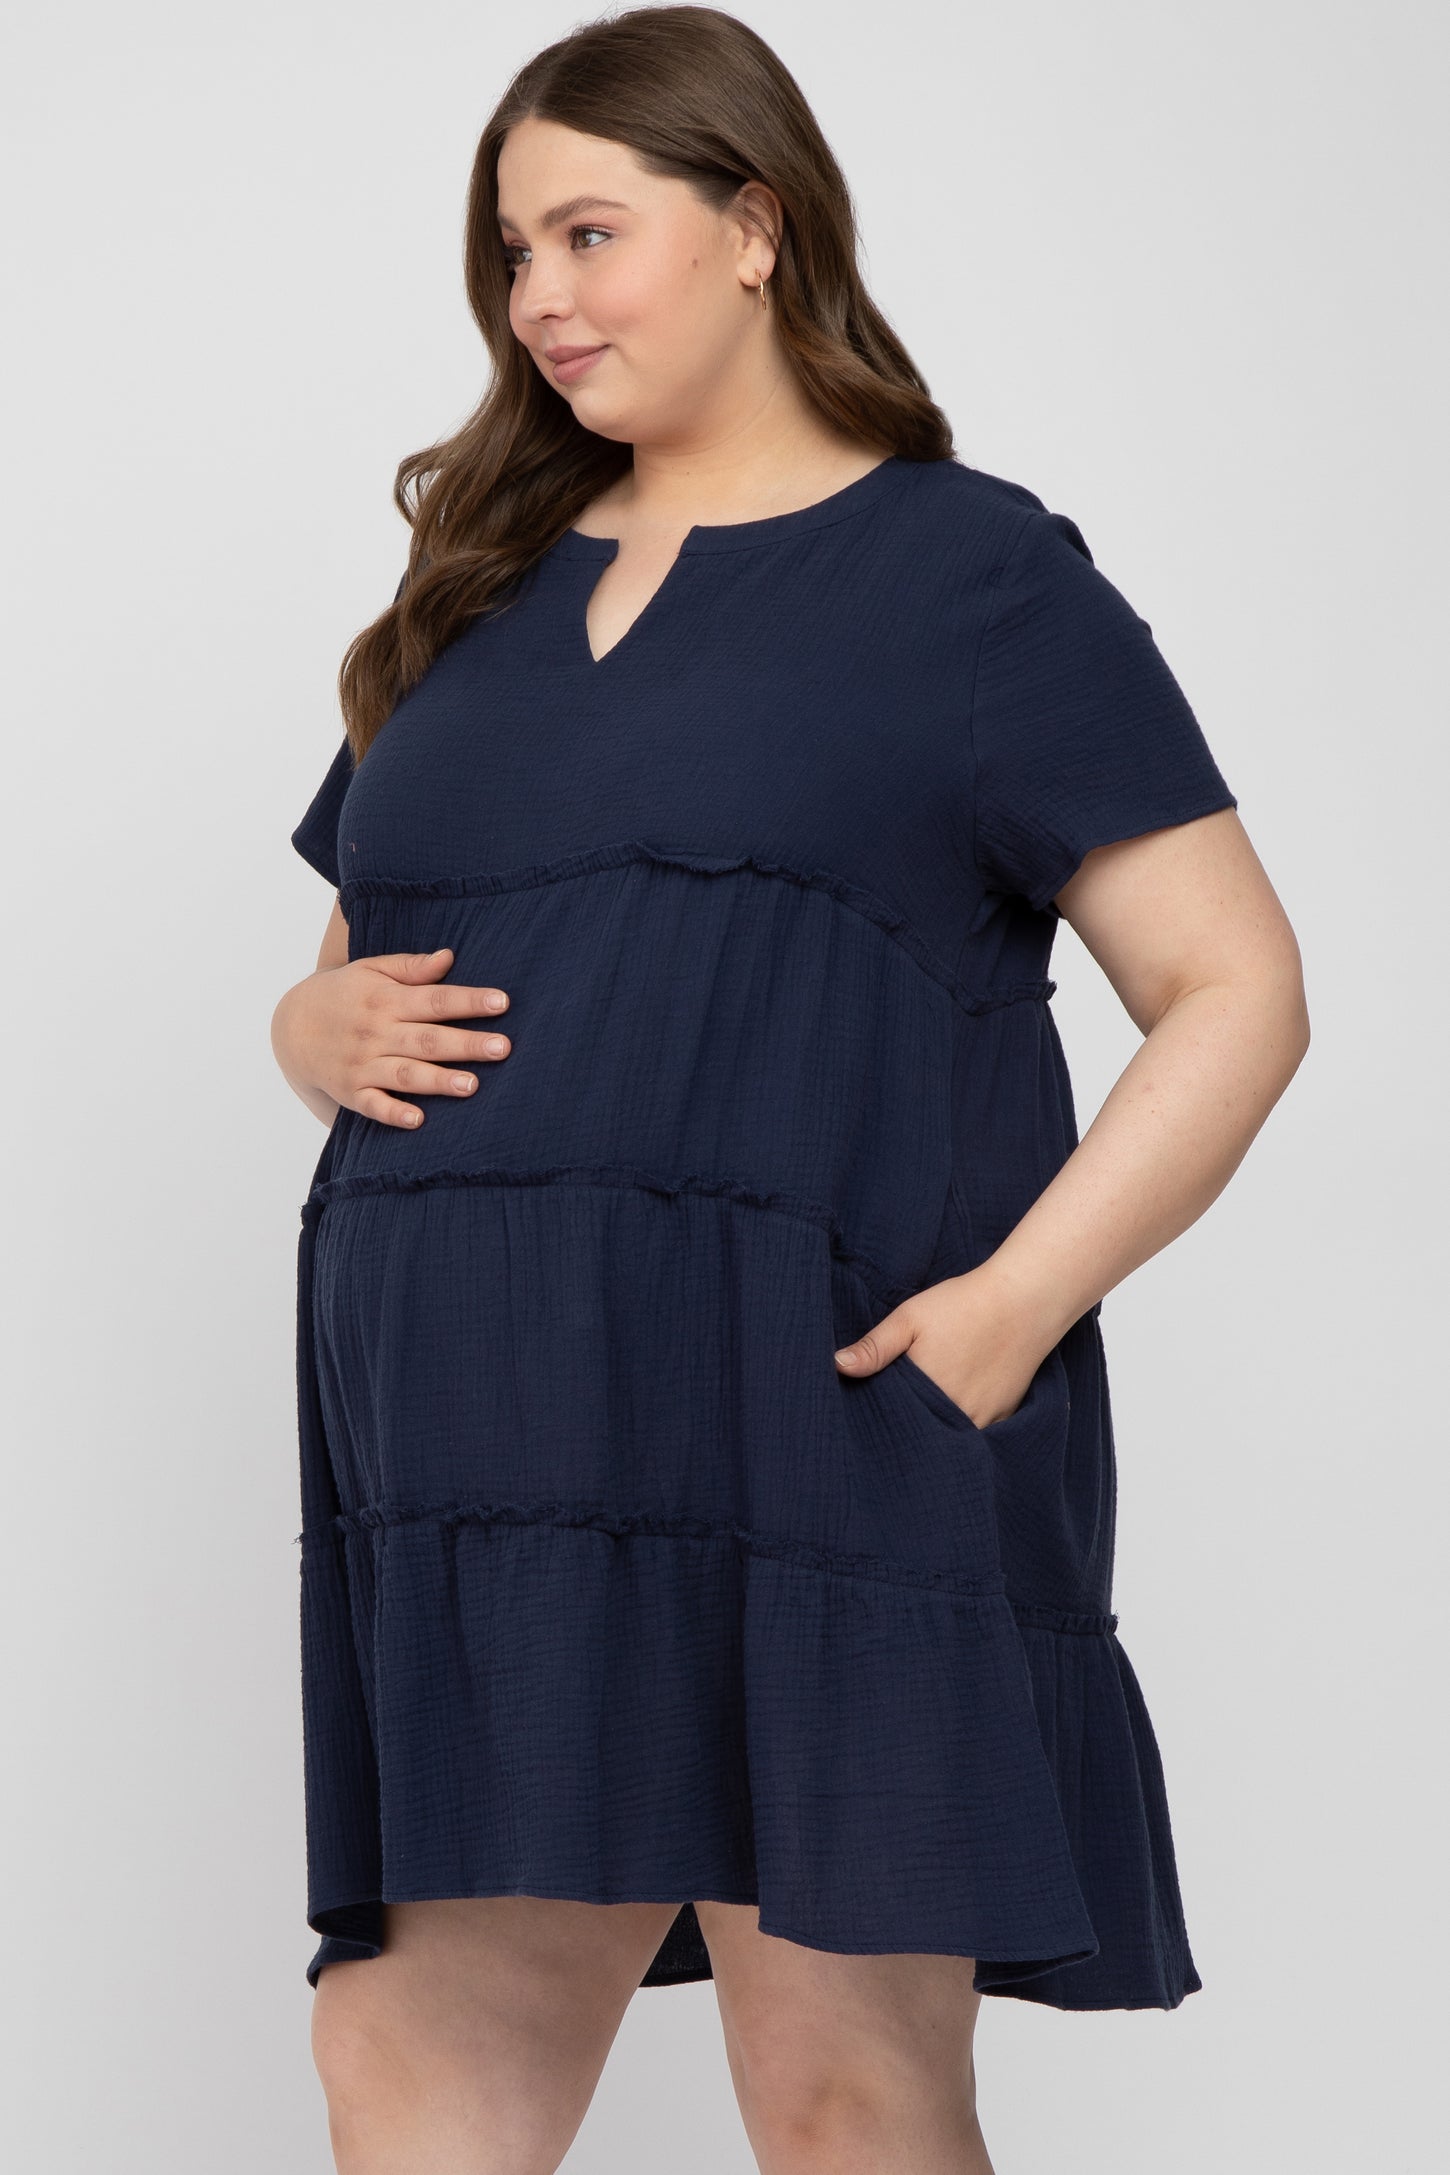 Navy Linen Babydoll Plus Maternity Dress